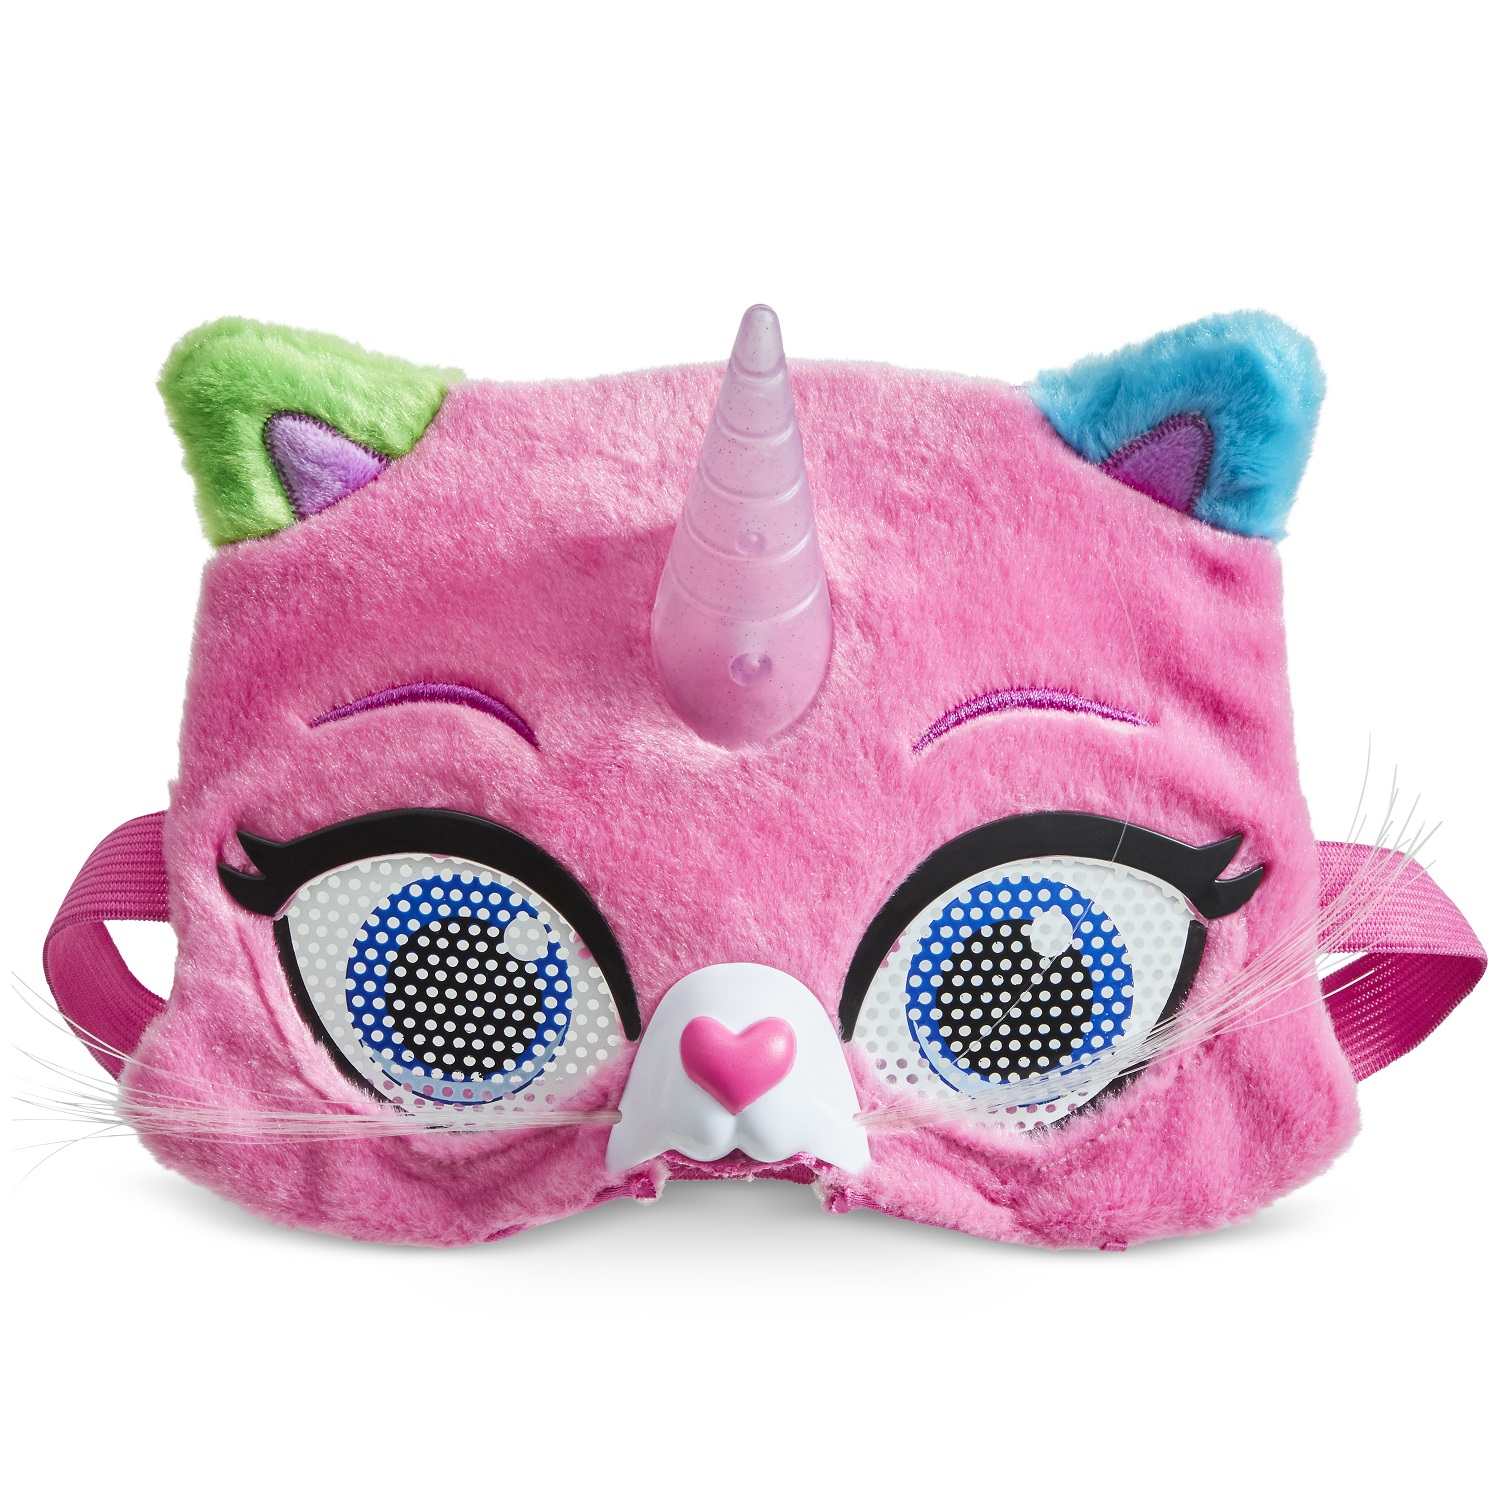 фото Радужно бабочково единорожная кошка игрушка радужные кошачьи глаза